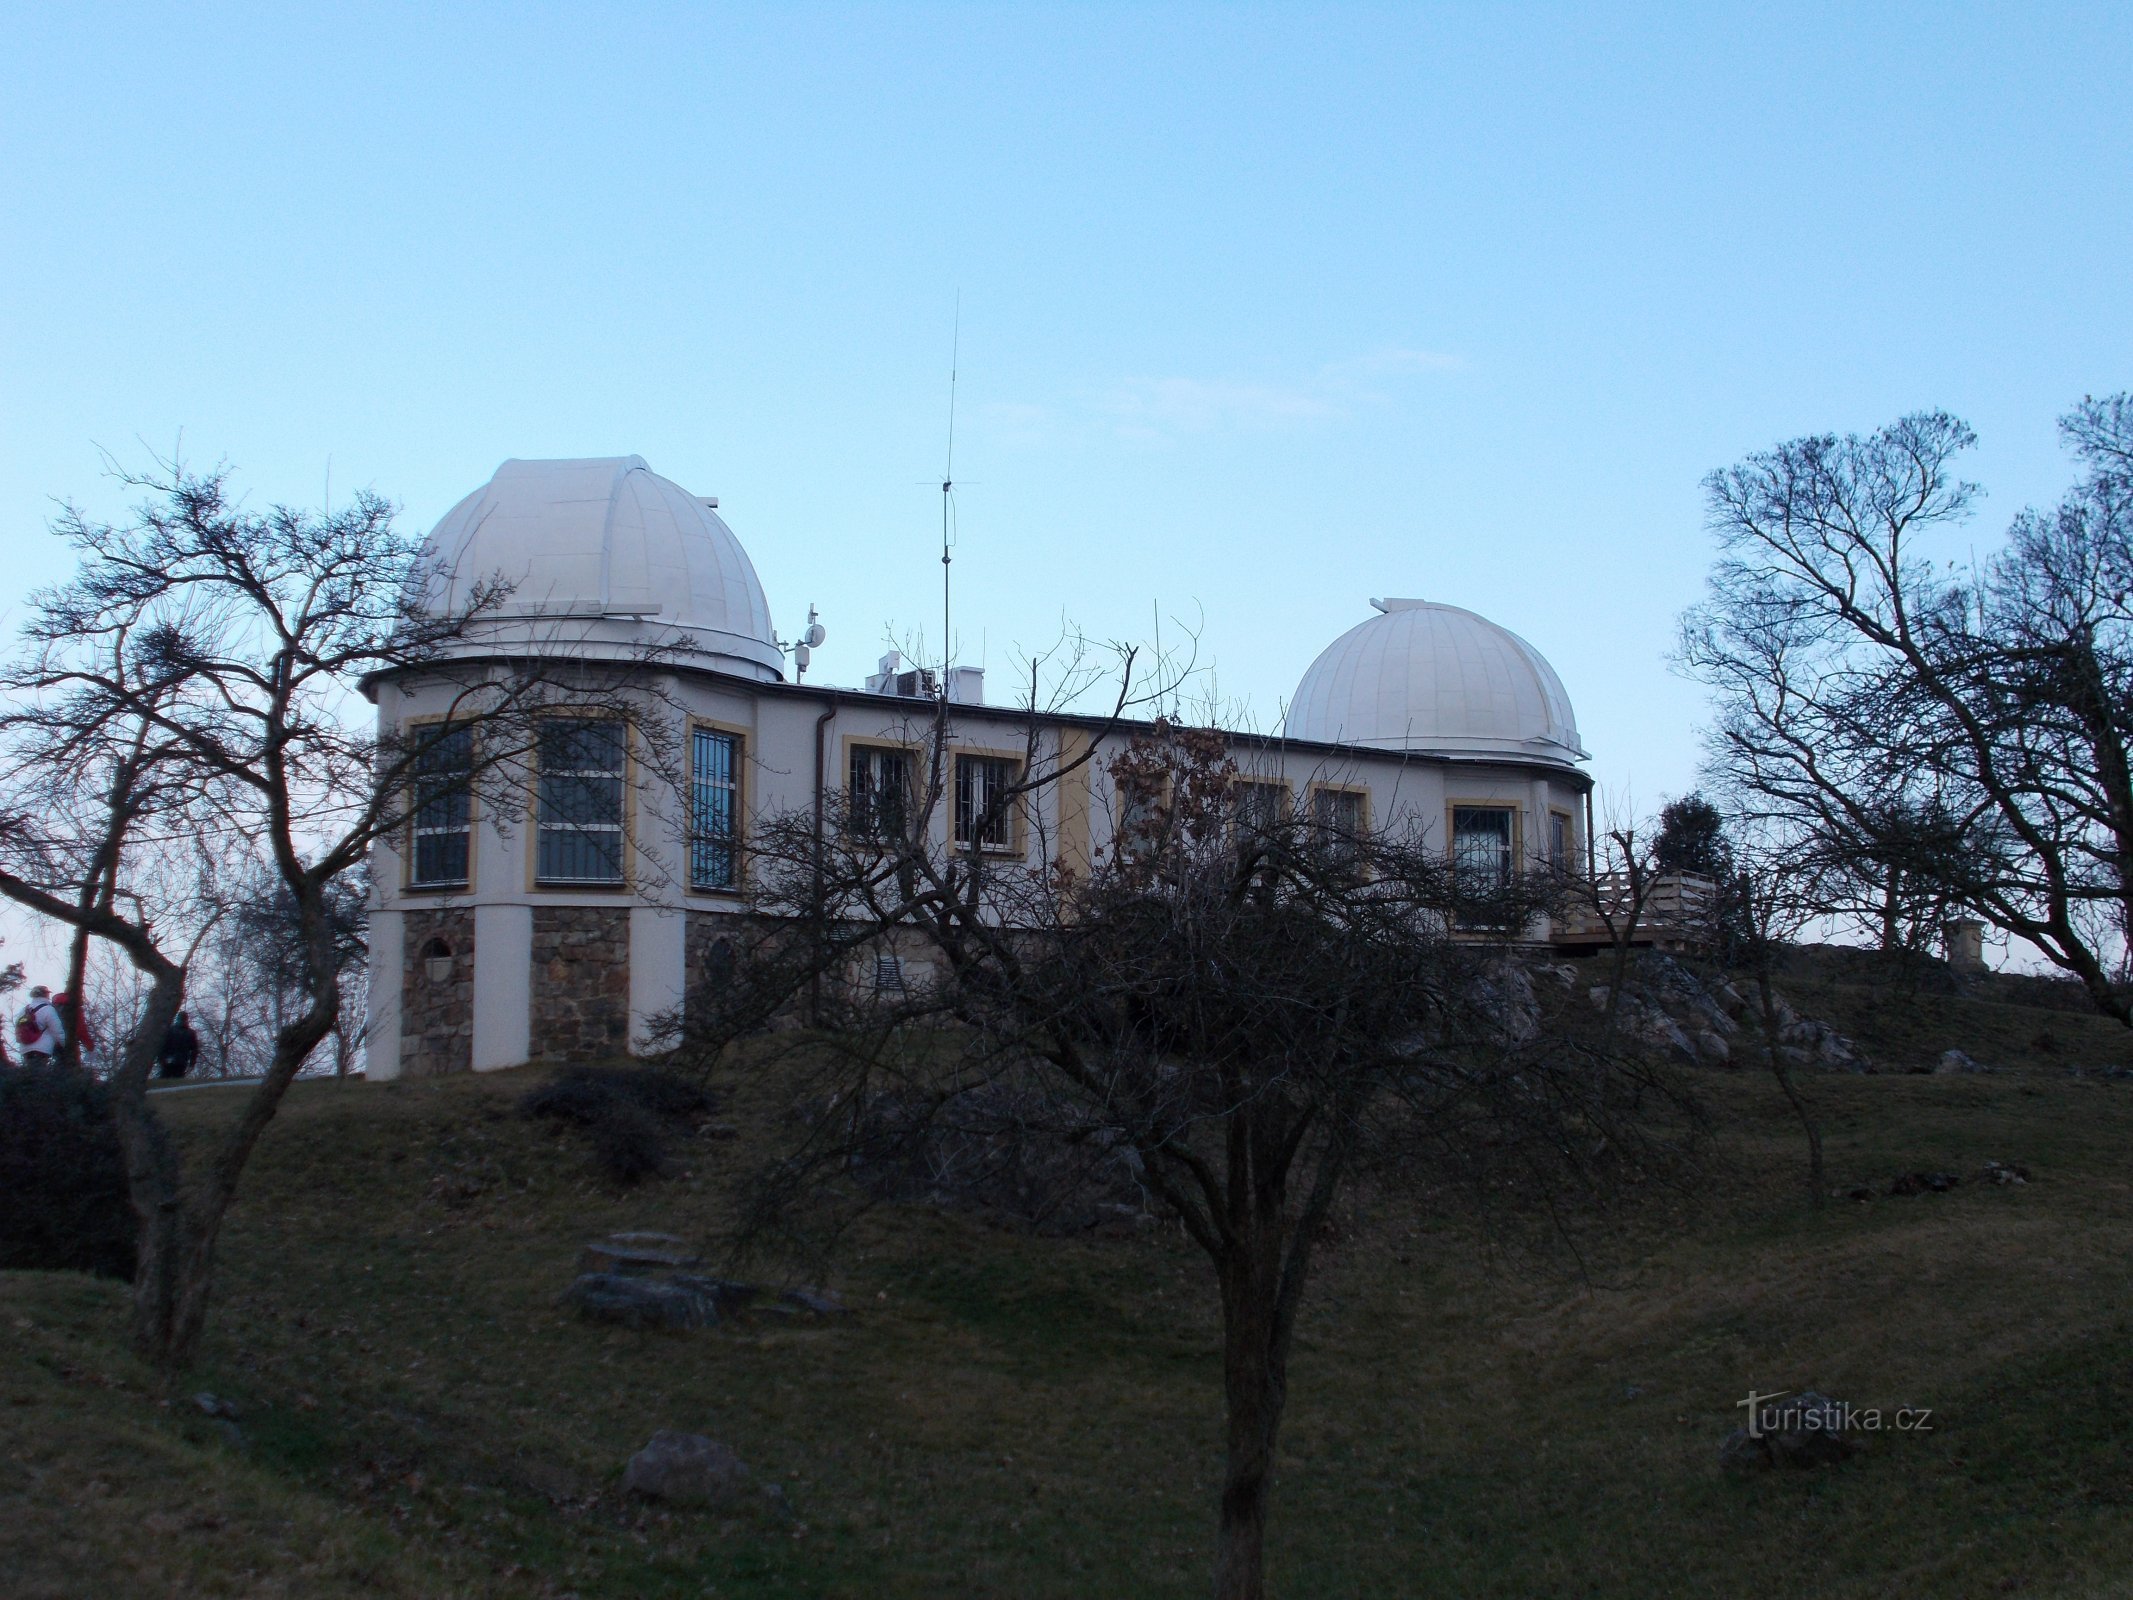 À espreita - observatório de Đáblice